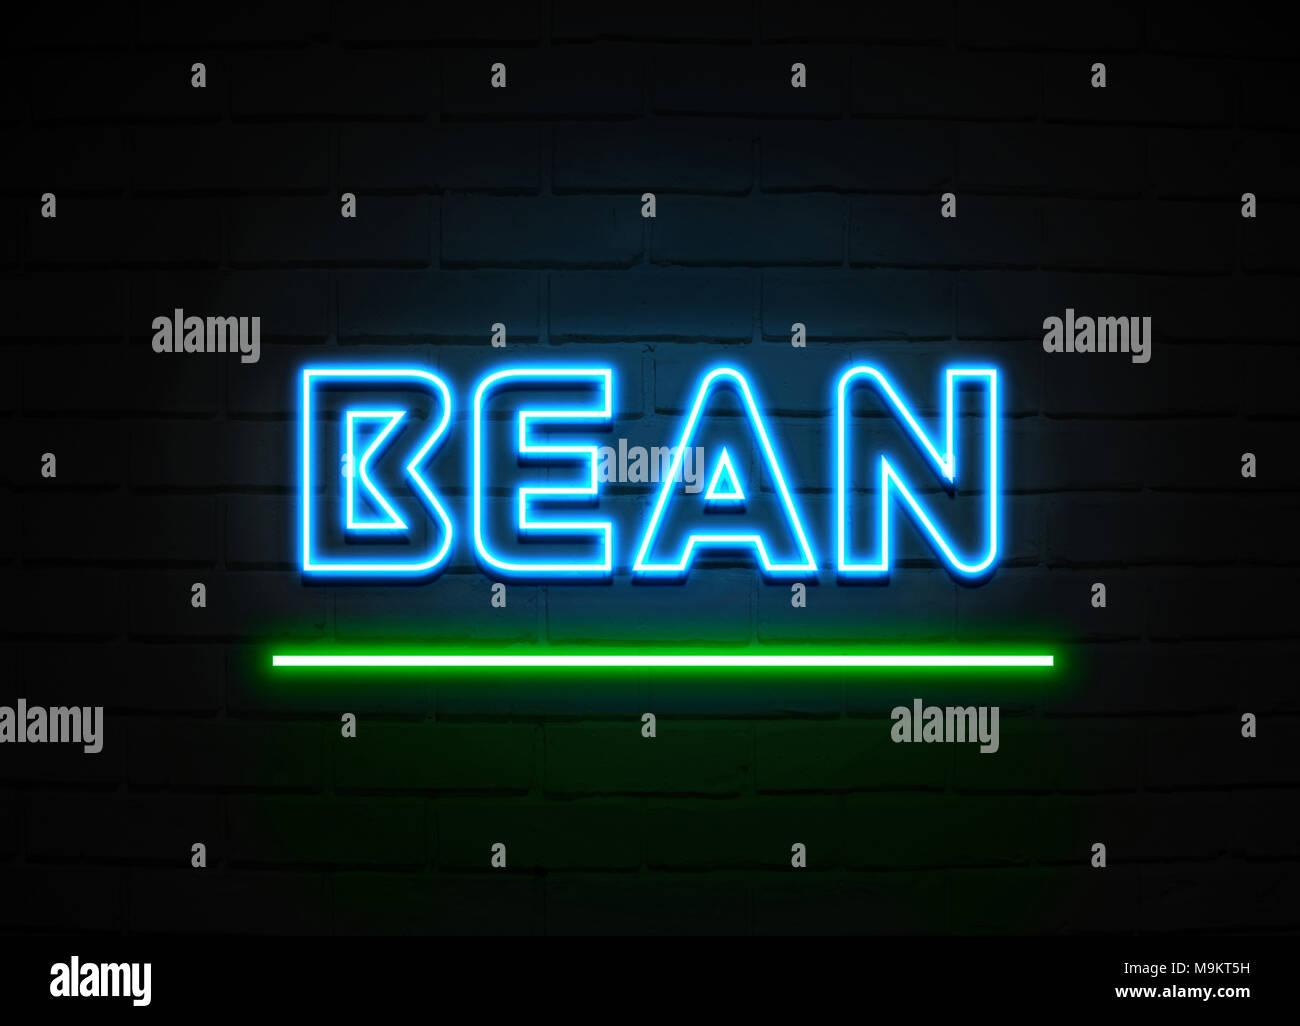 Bean Leuchtreklame - glühende Leuchtreklame auf brickwall Wand - 3D-Royalty Free Stock Illustration dargestellt. Stockfoto